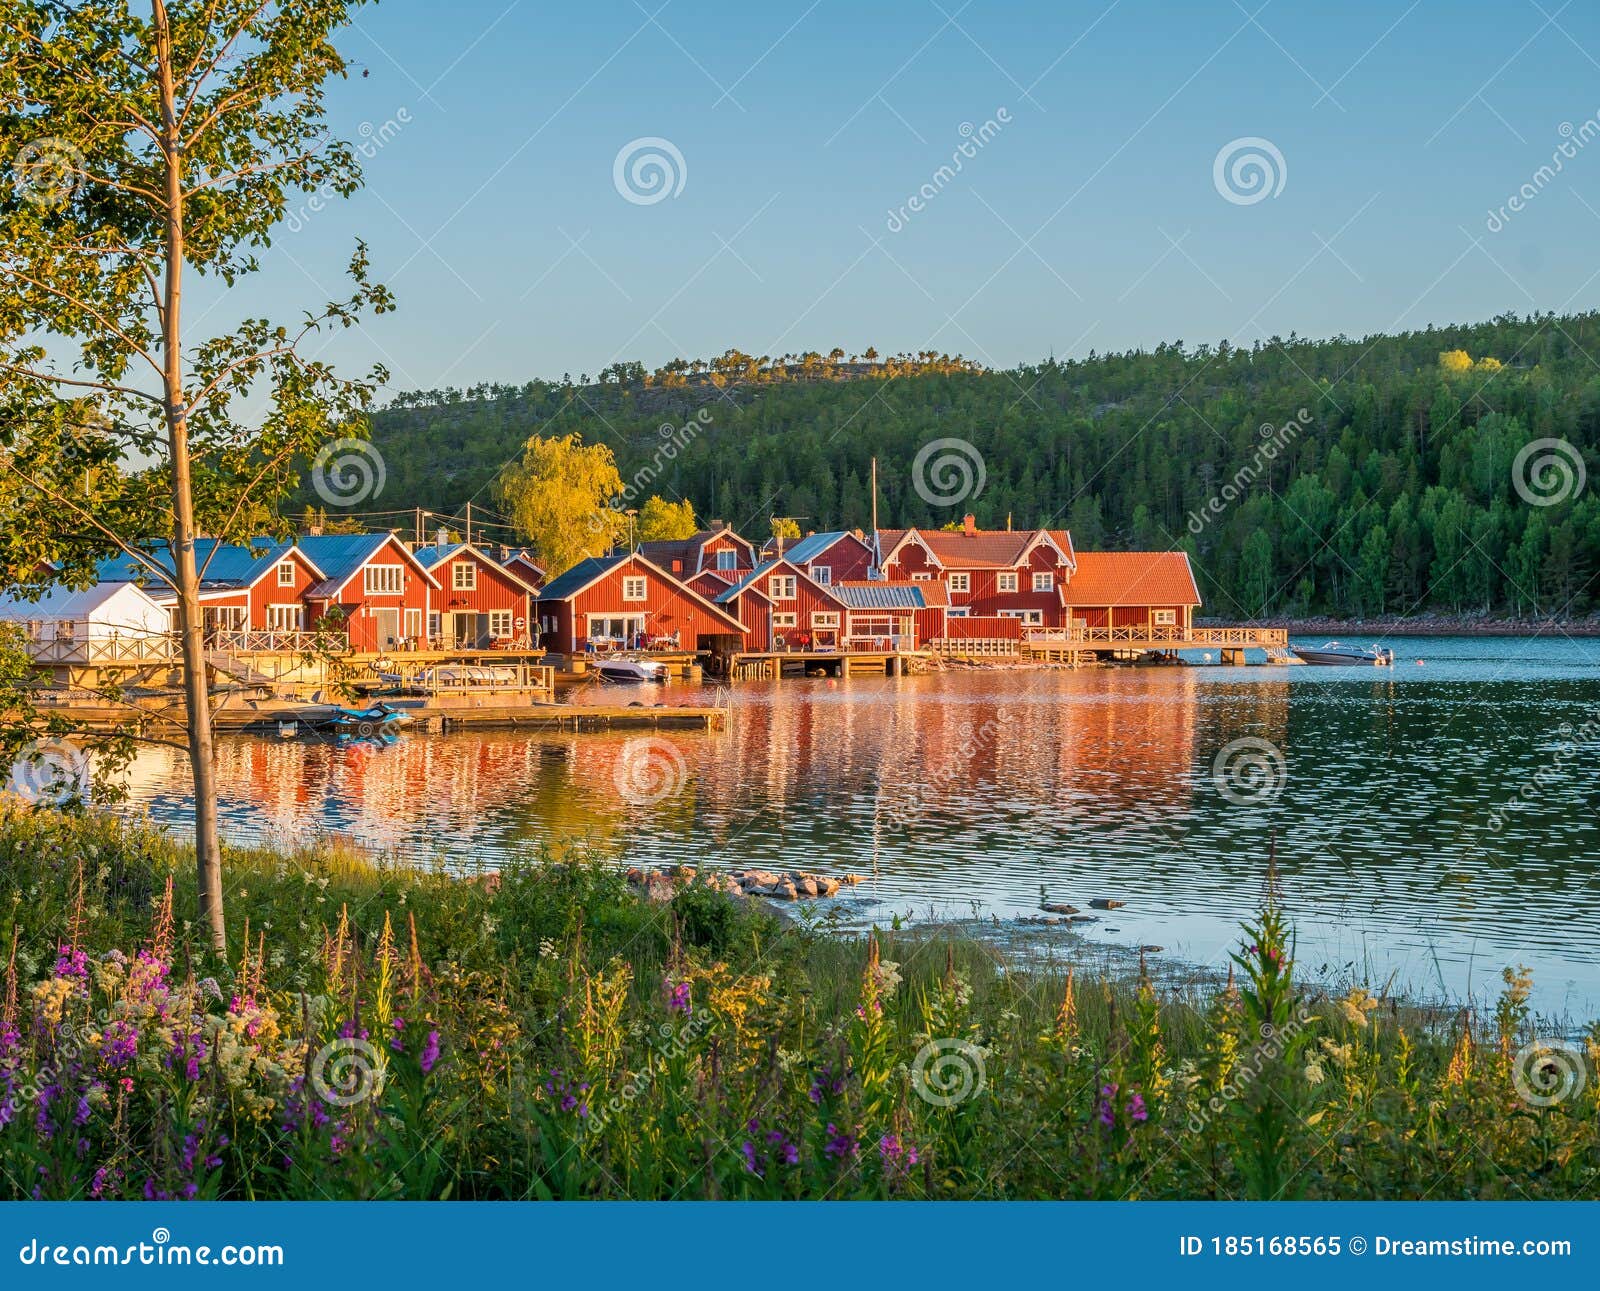 Swedish Archipelago in High Coast Area Image - of lake, area: 185168565